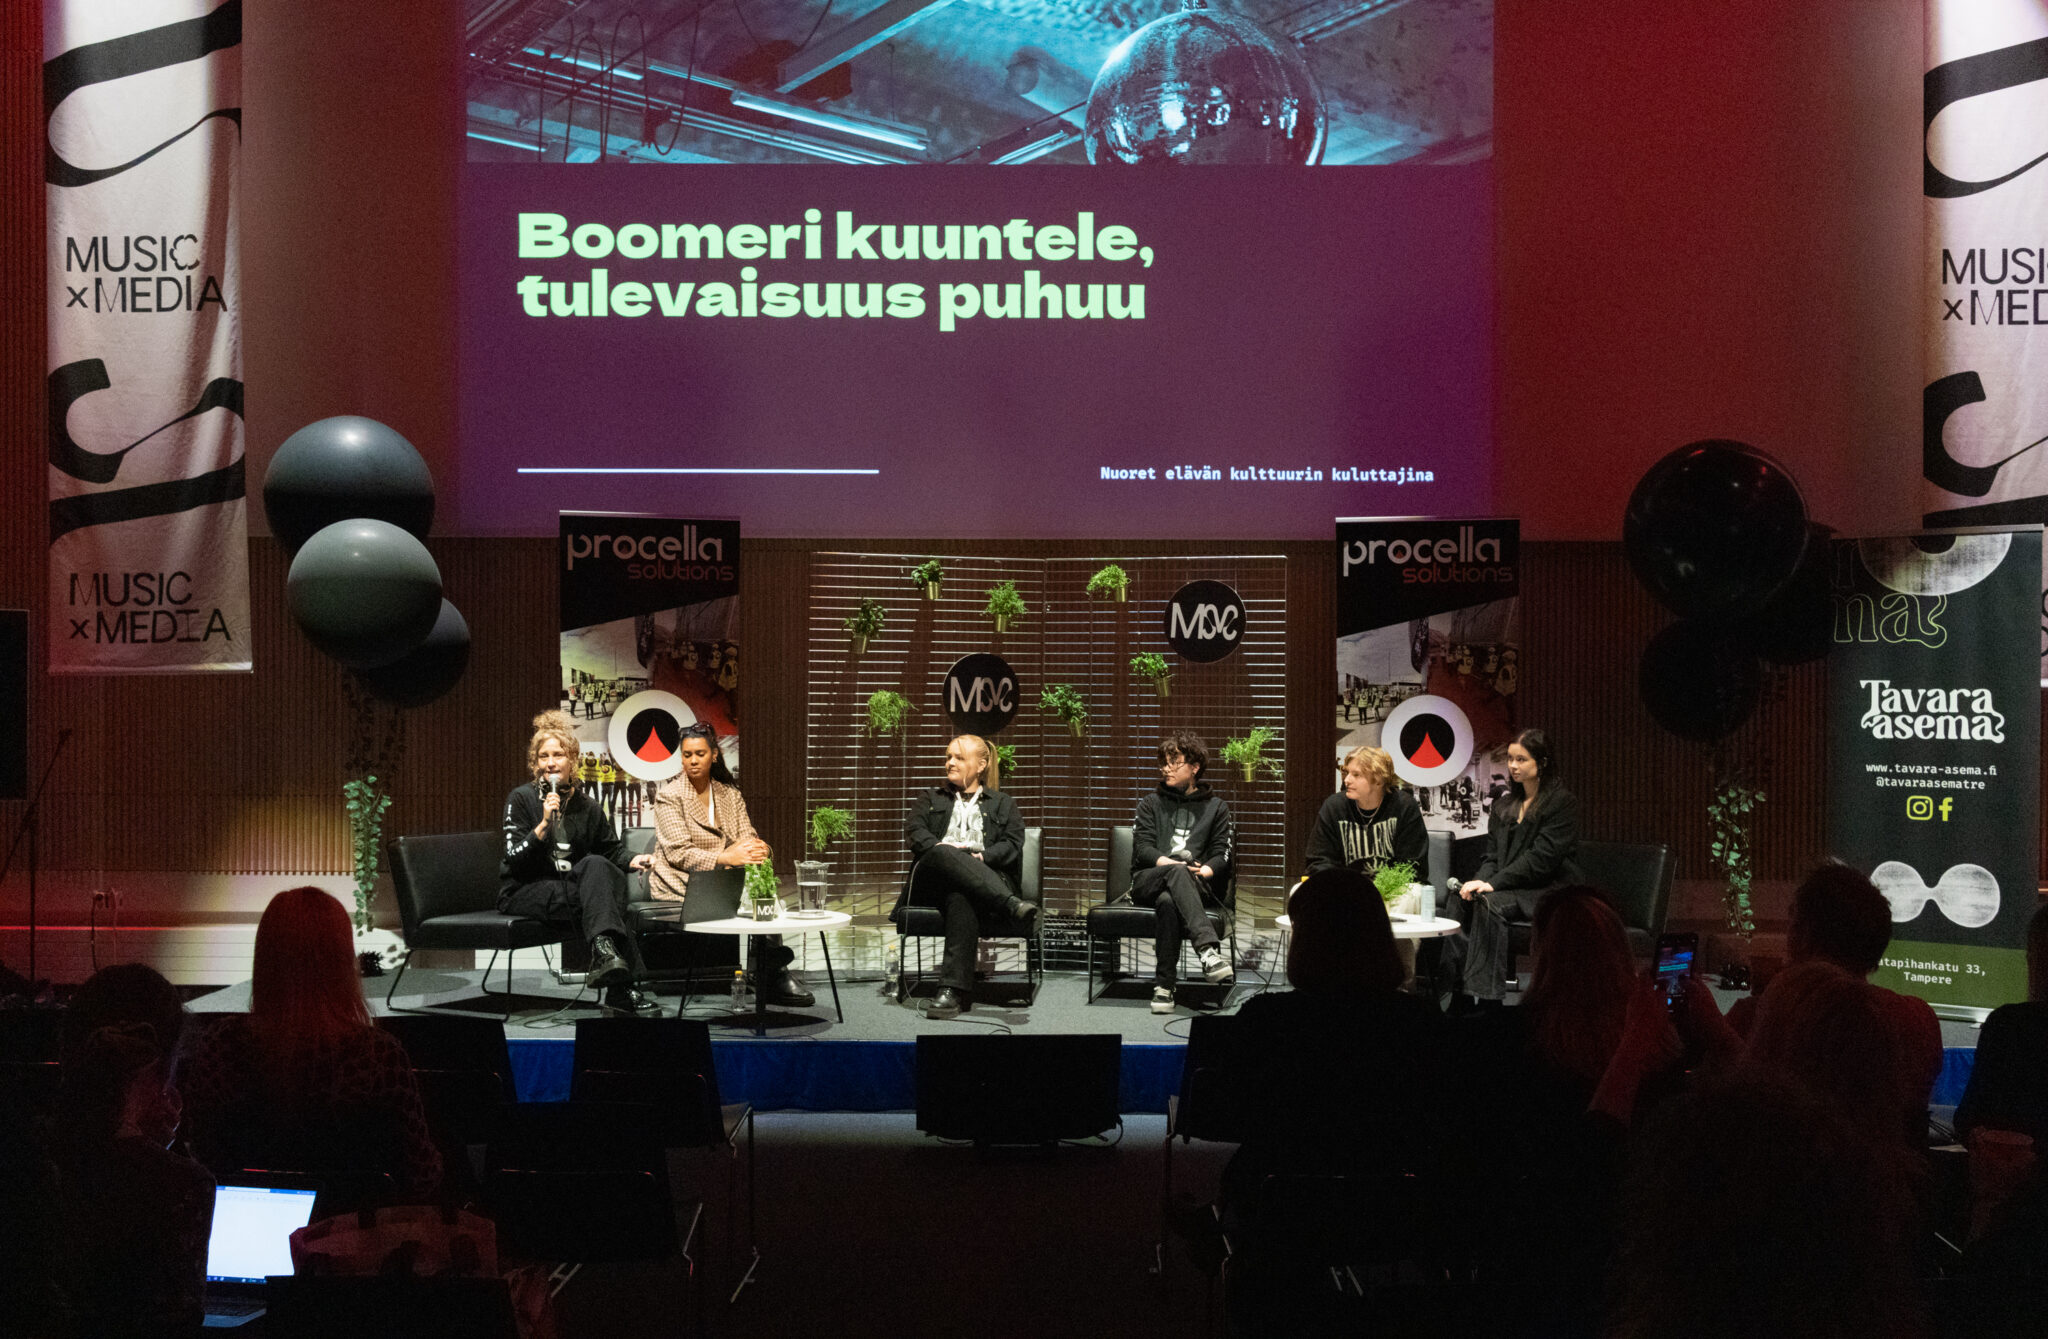 "Boomeri kuuntele, tulevaisuus puhuu" -keskustelun panelistit ja moderaattori istuvat Tampere-talon kokoussalin lavalla. Huone on täynnä väkeä, ja valaistus tilassa on hämärä. Lavan takana näkyy diaesitys, mainosjulisteita ja vihrekasveja.